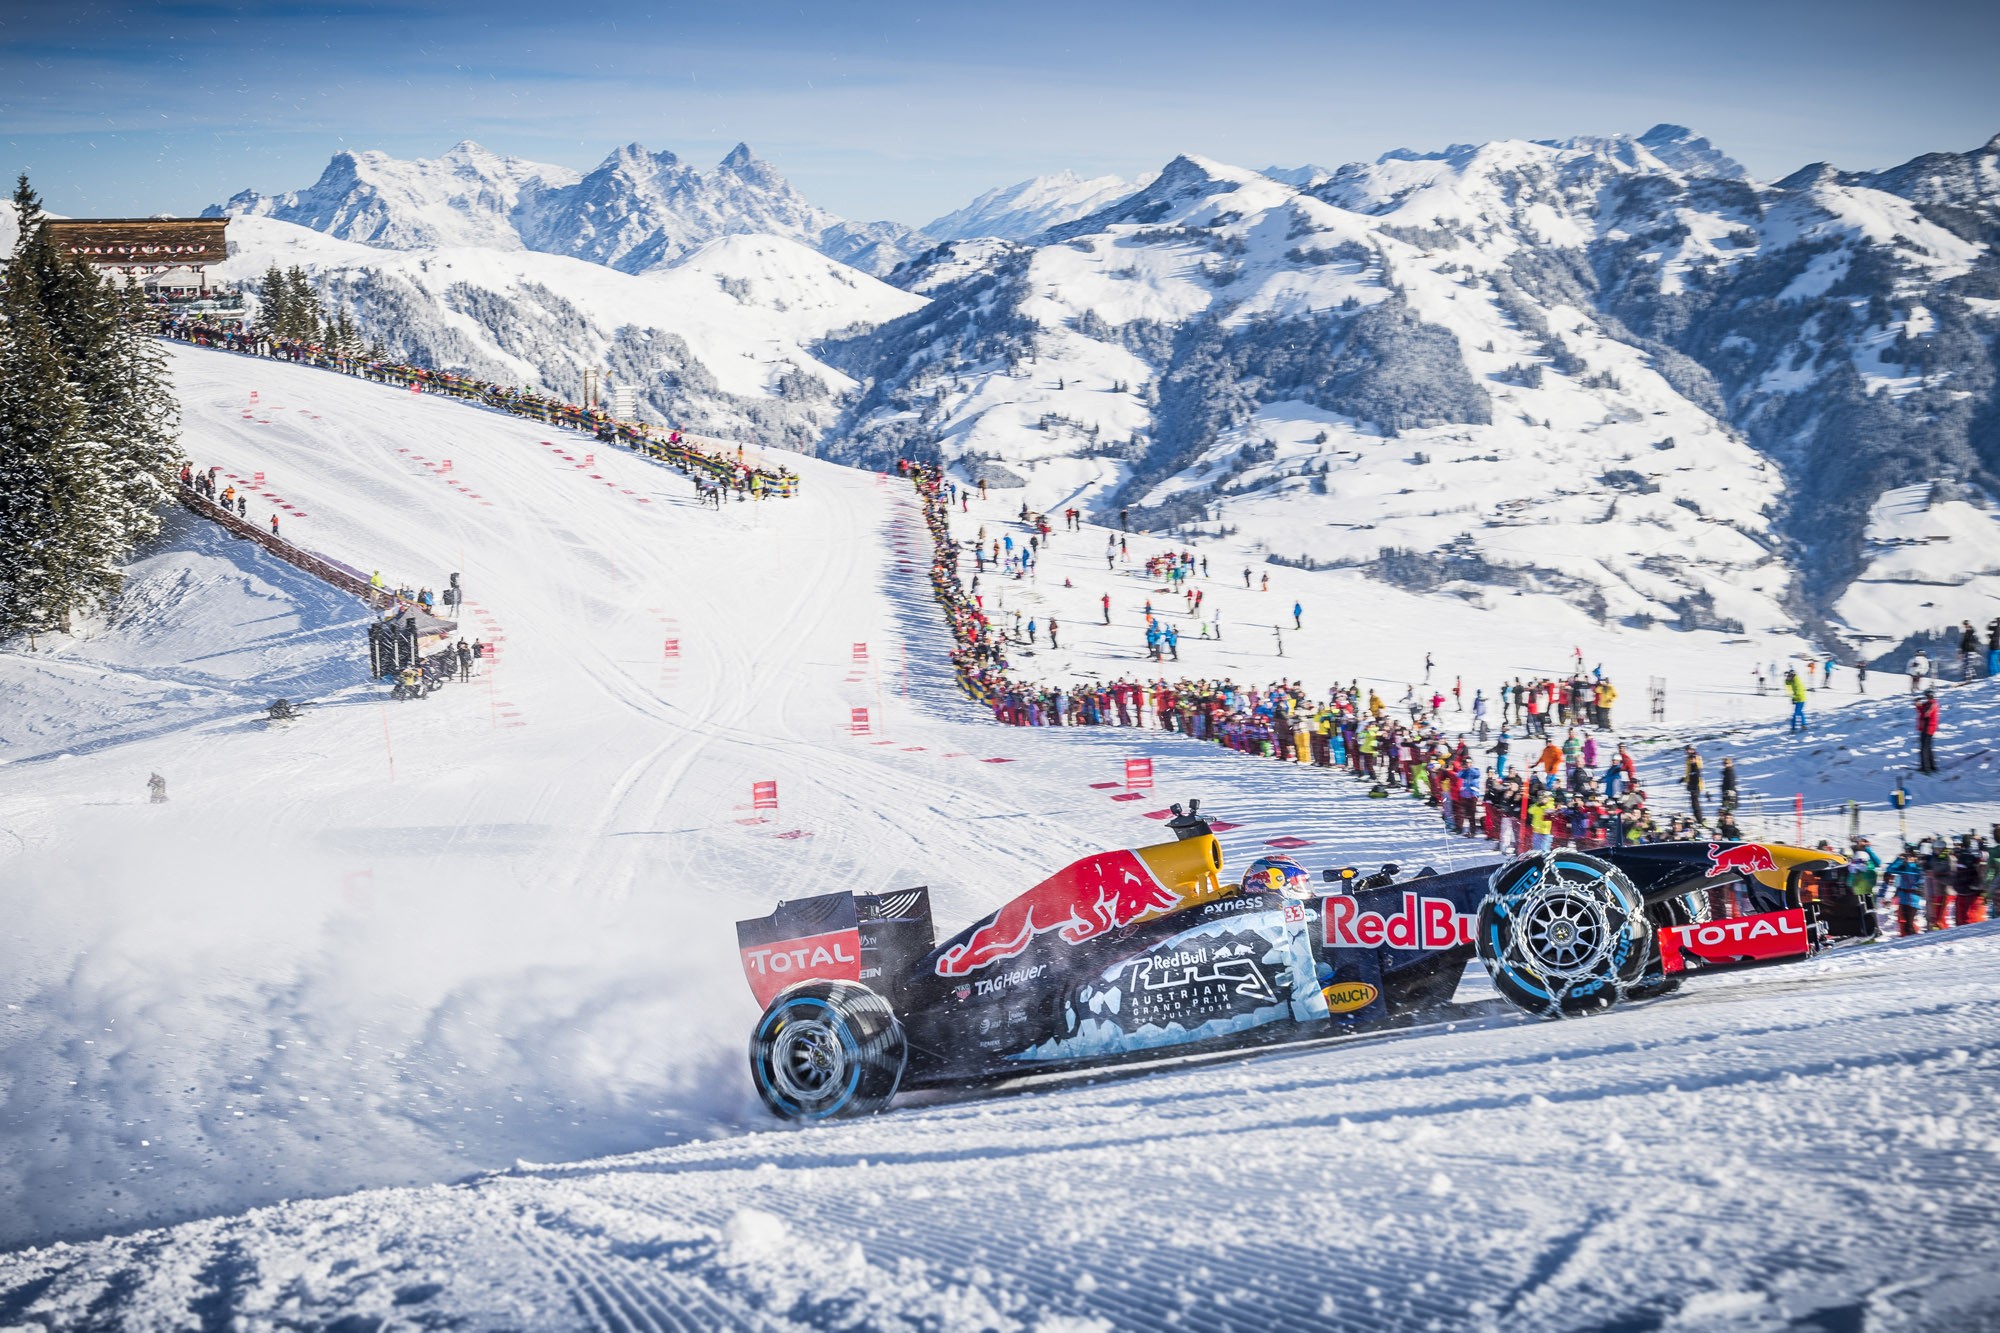 Formula 1, Max Verstappen, Kitzbühel, Red Bull Racing, Snow, Racing